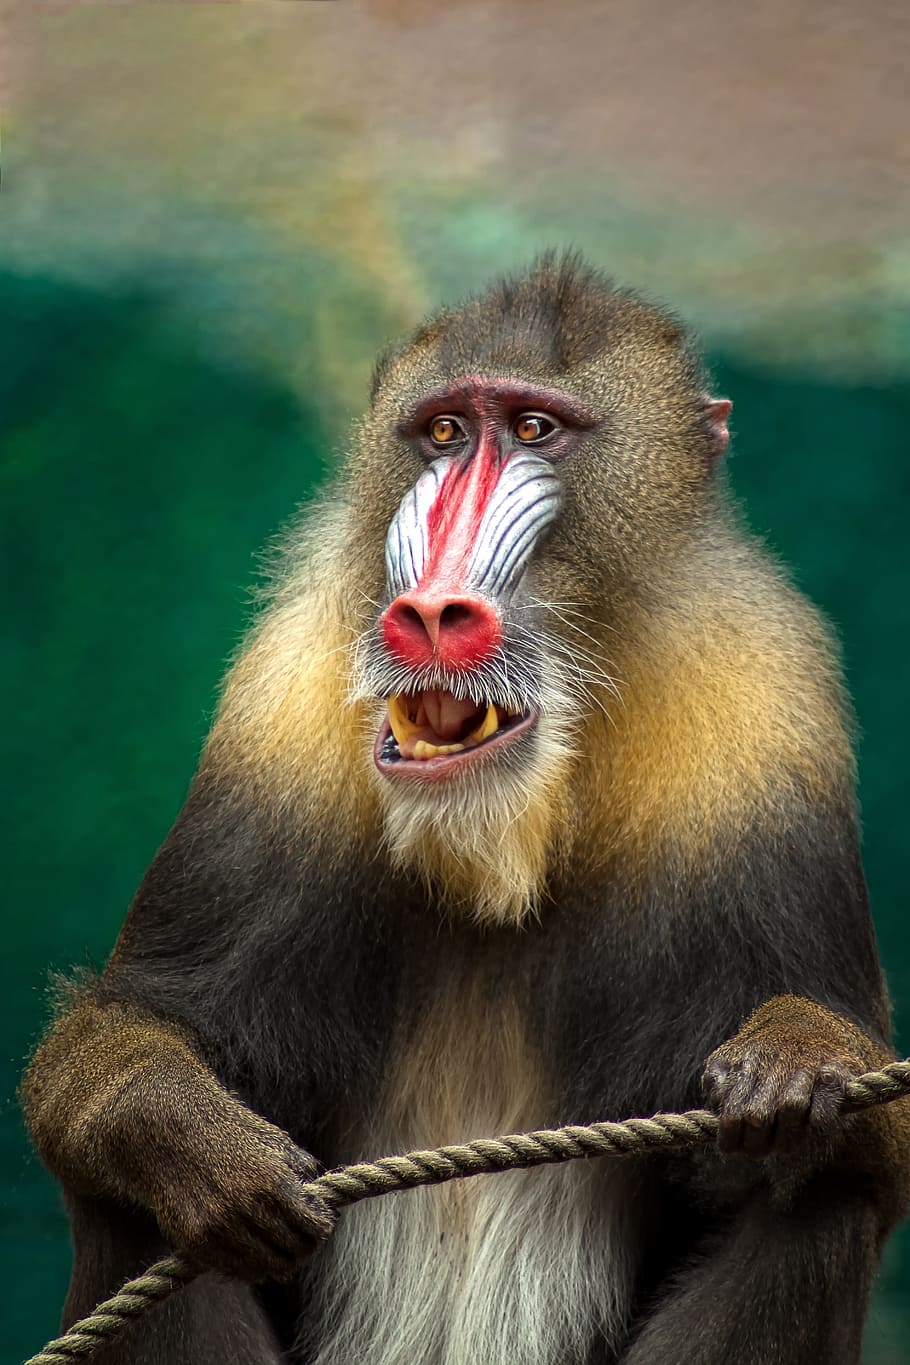 селективный, фокус фотография обезьяна бабуин, обезьяна, мандрил, африка, бабуин, опасный, животное, хищник, цвет